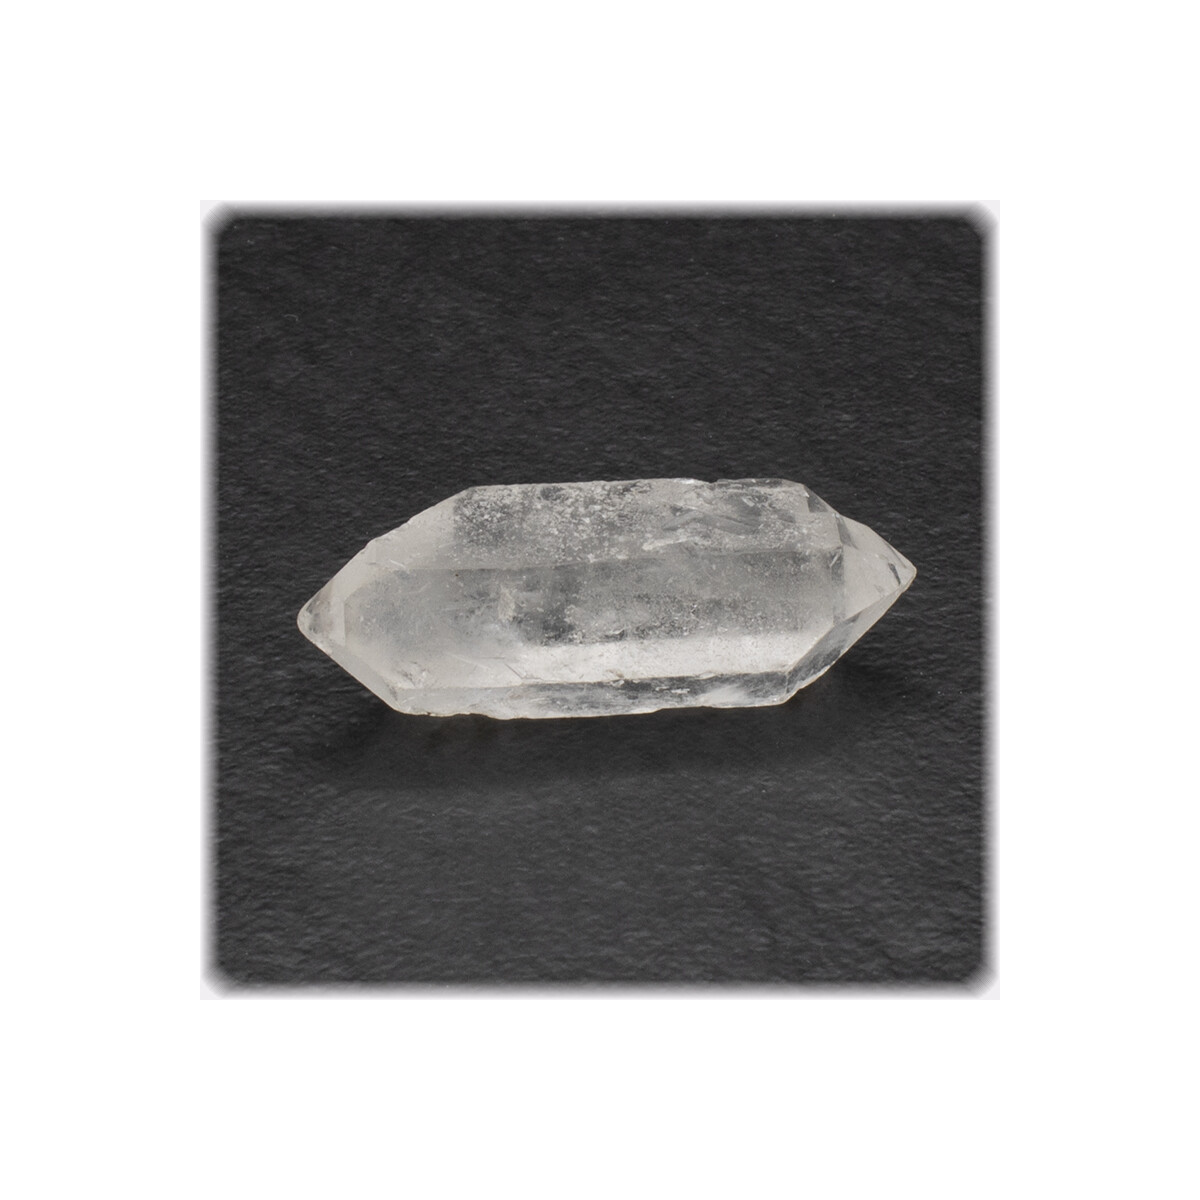 Doppel-Ender Bergkristall Spitze / Länge 5,5 cm / 7g / Brasilien